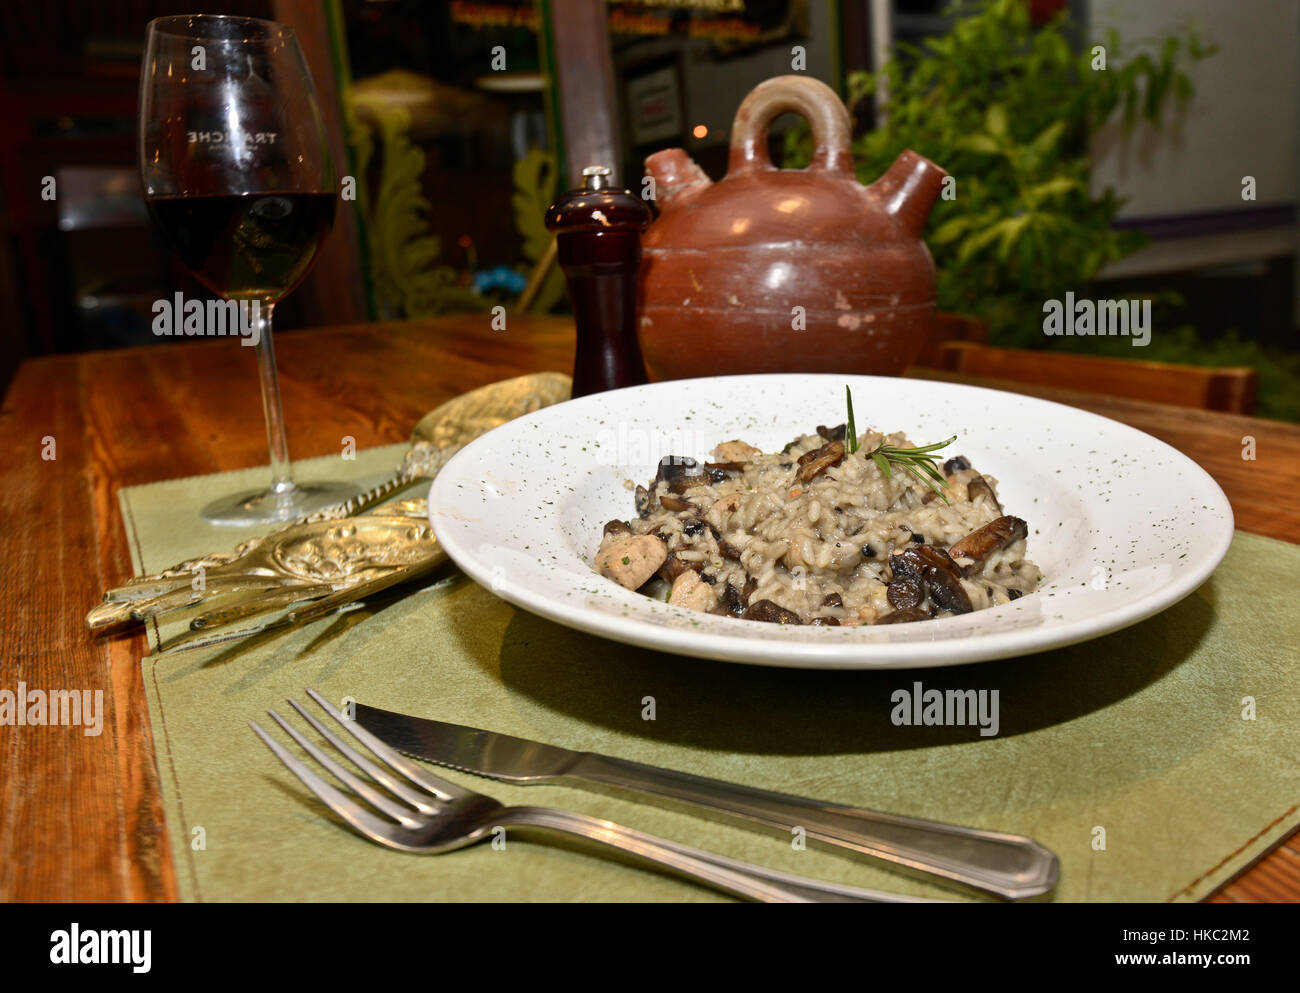 Risotto al Funghi (Pilze) mit einem Glas Rotwein Stockfoto